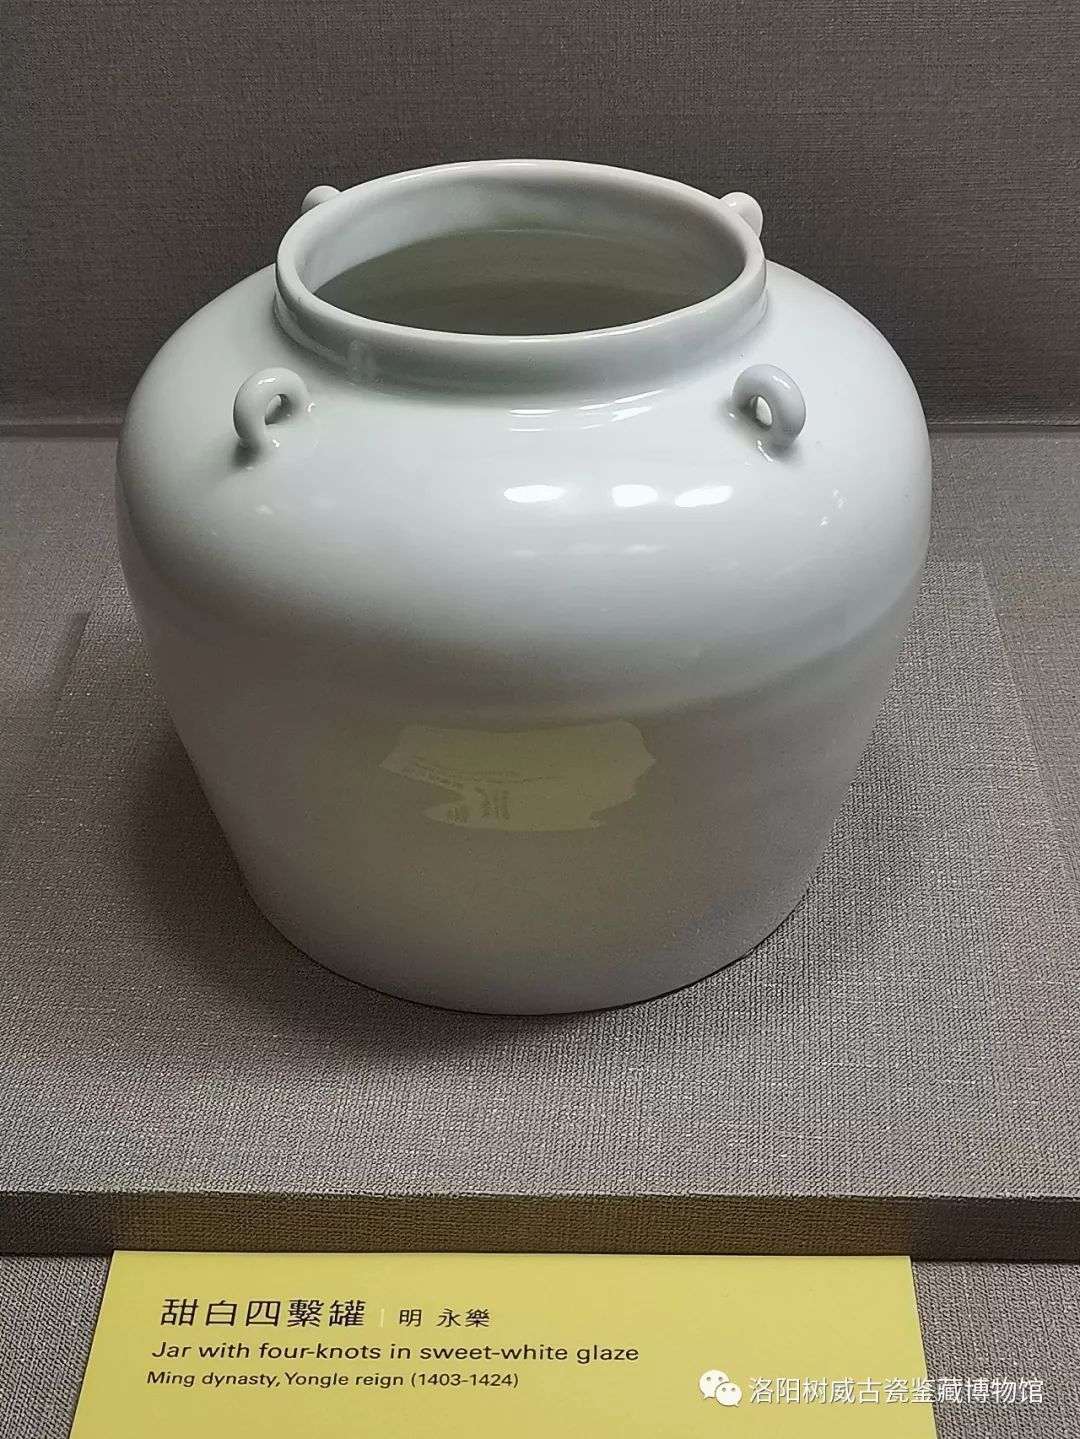 台北故宫珍藏的明代永乐甜白釉瓷器鉴赏